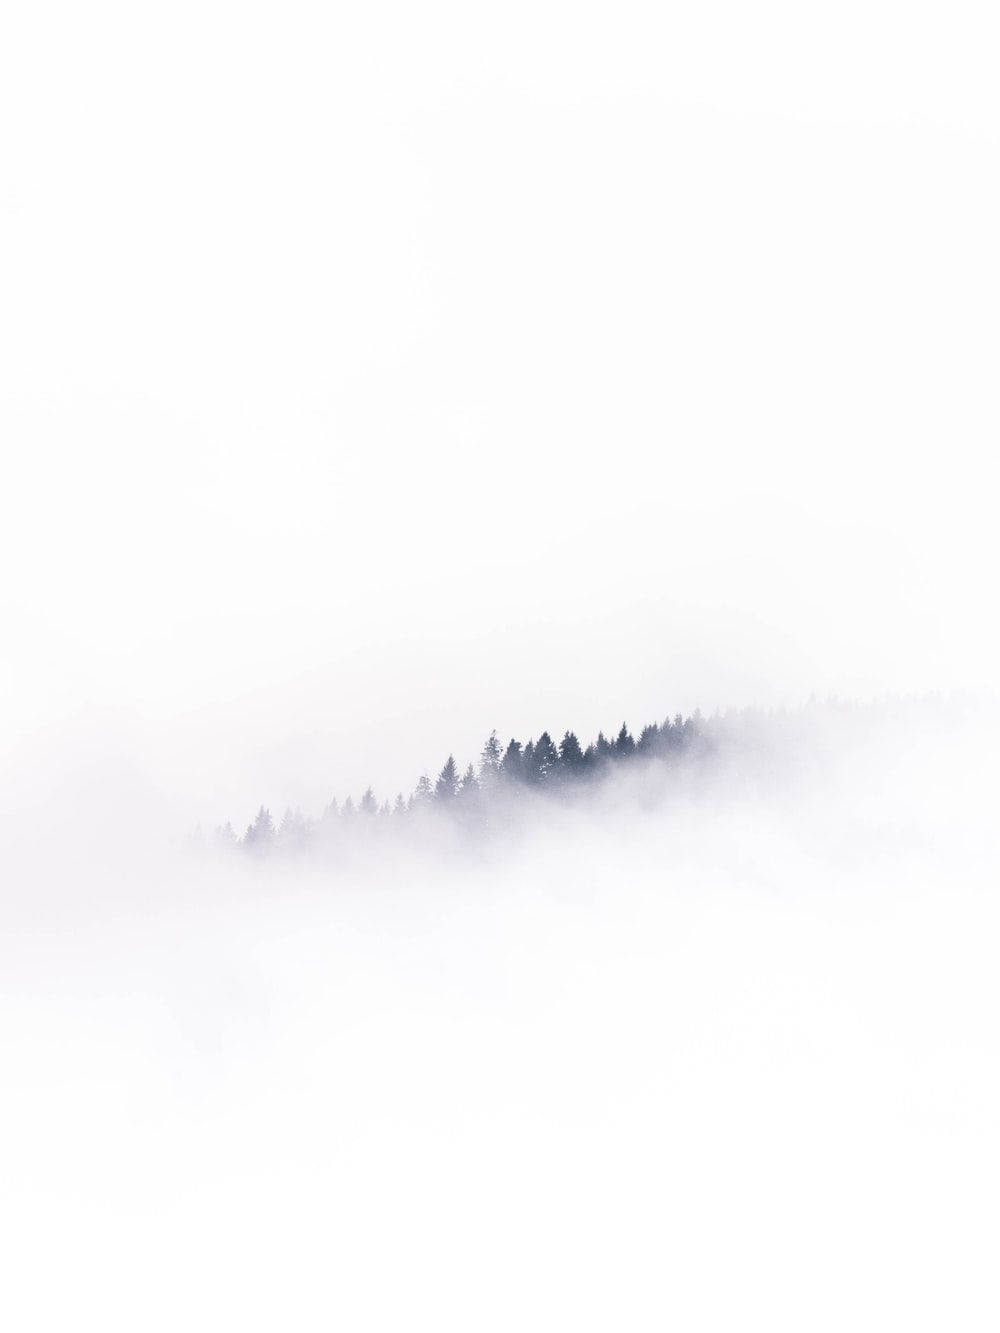 Weißervollbild-wald Im Nebel Wallpaper